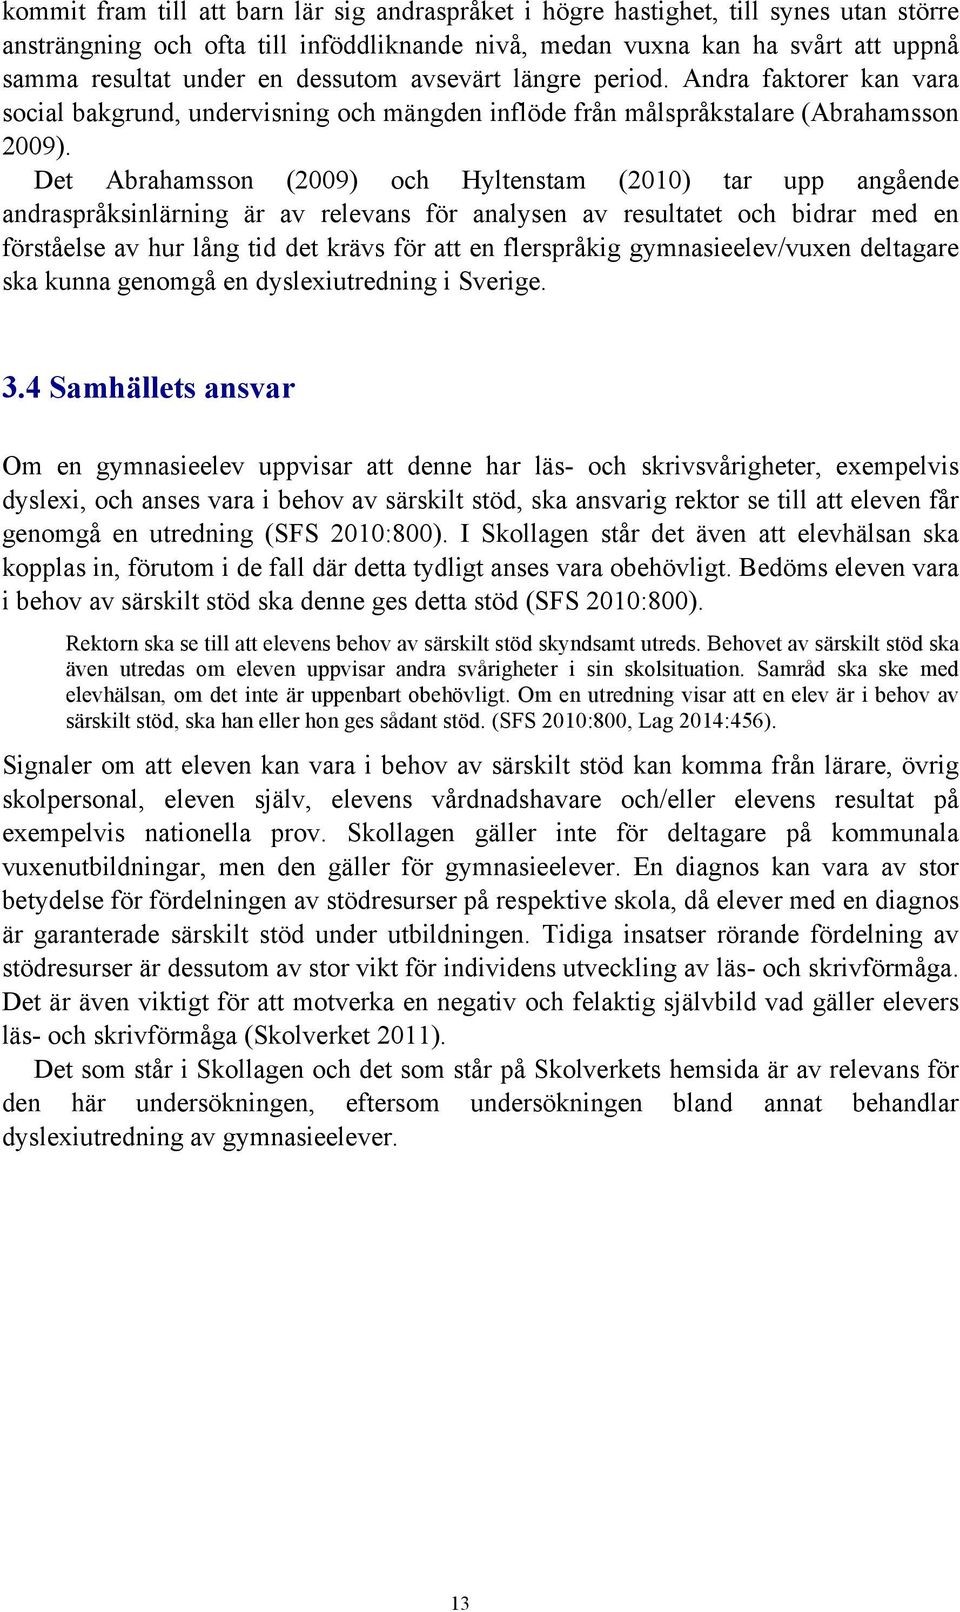 Det Abrahamsson (2009) och Hyltenstam (2010) tar upp angående andraspråksinlärning är av relevans för analysen av resultatet och bidrar med en förståelse av hur lång tid det krävs för att en